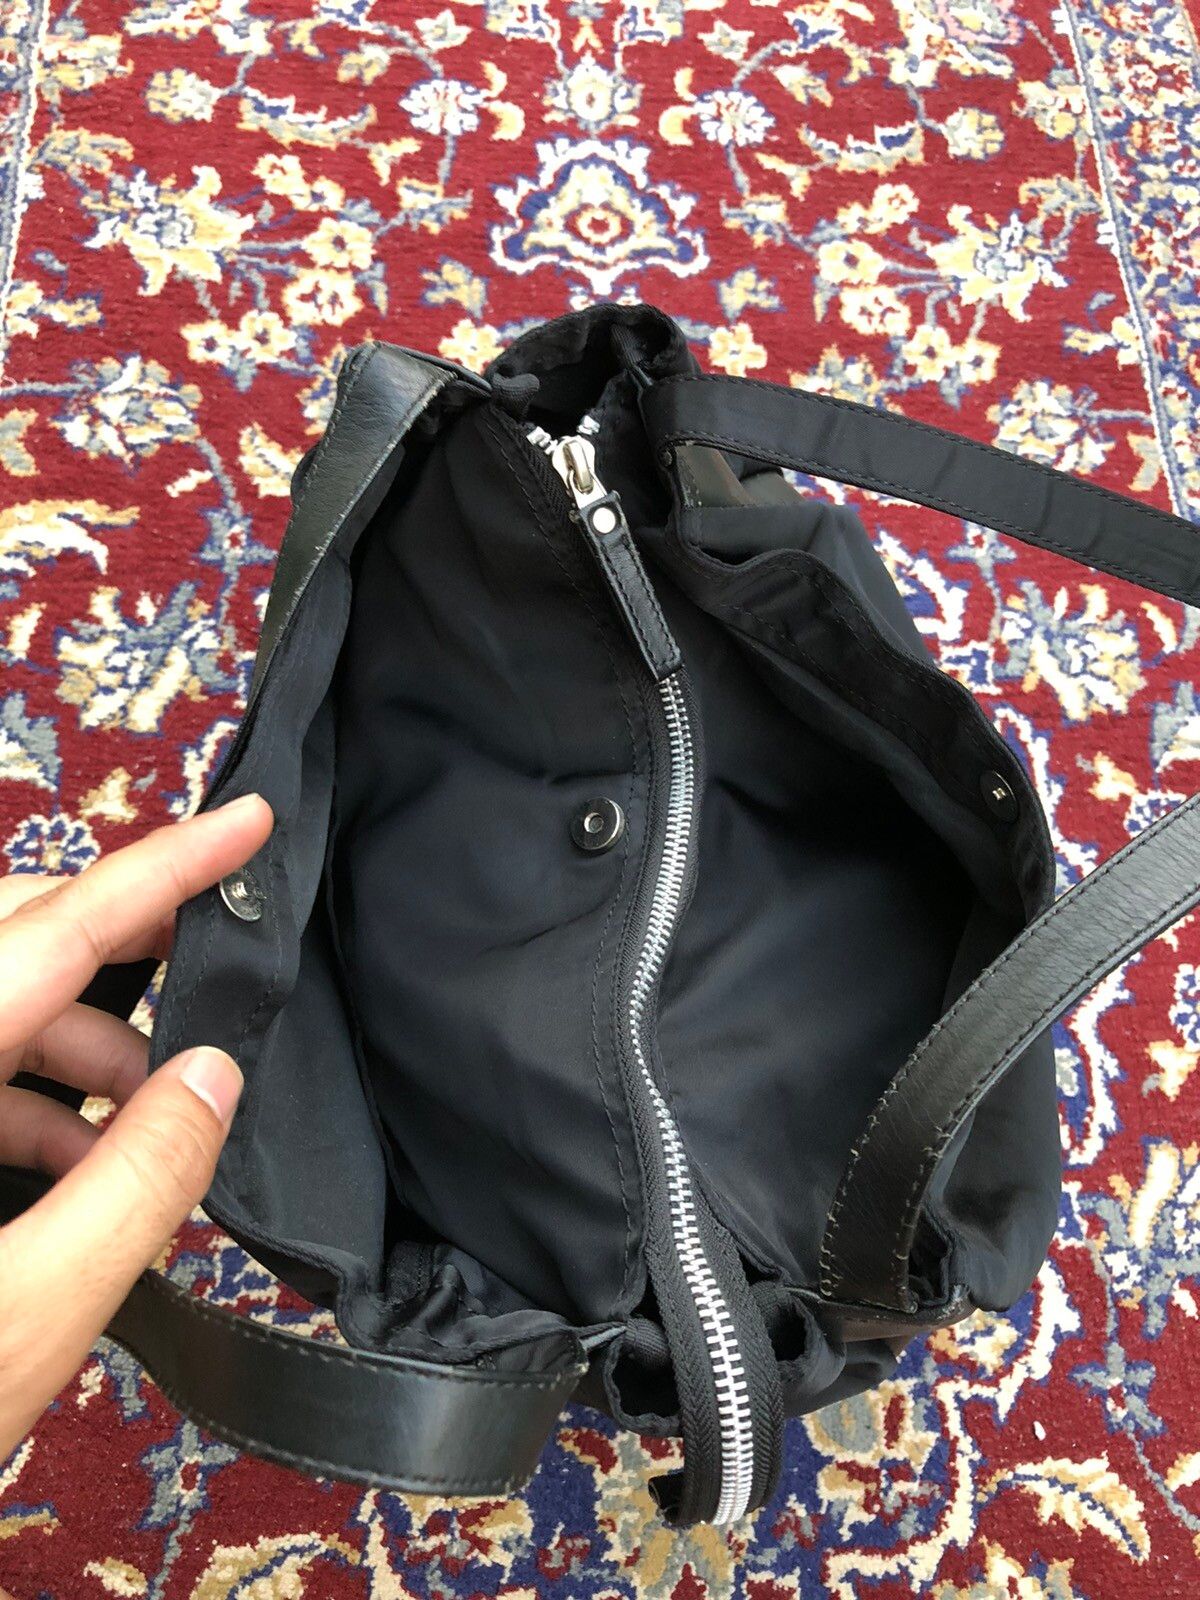 Y’saacs Nylon Duffle Gym Travel Bag - 13